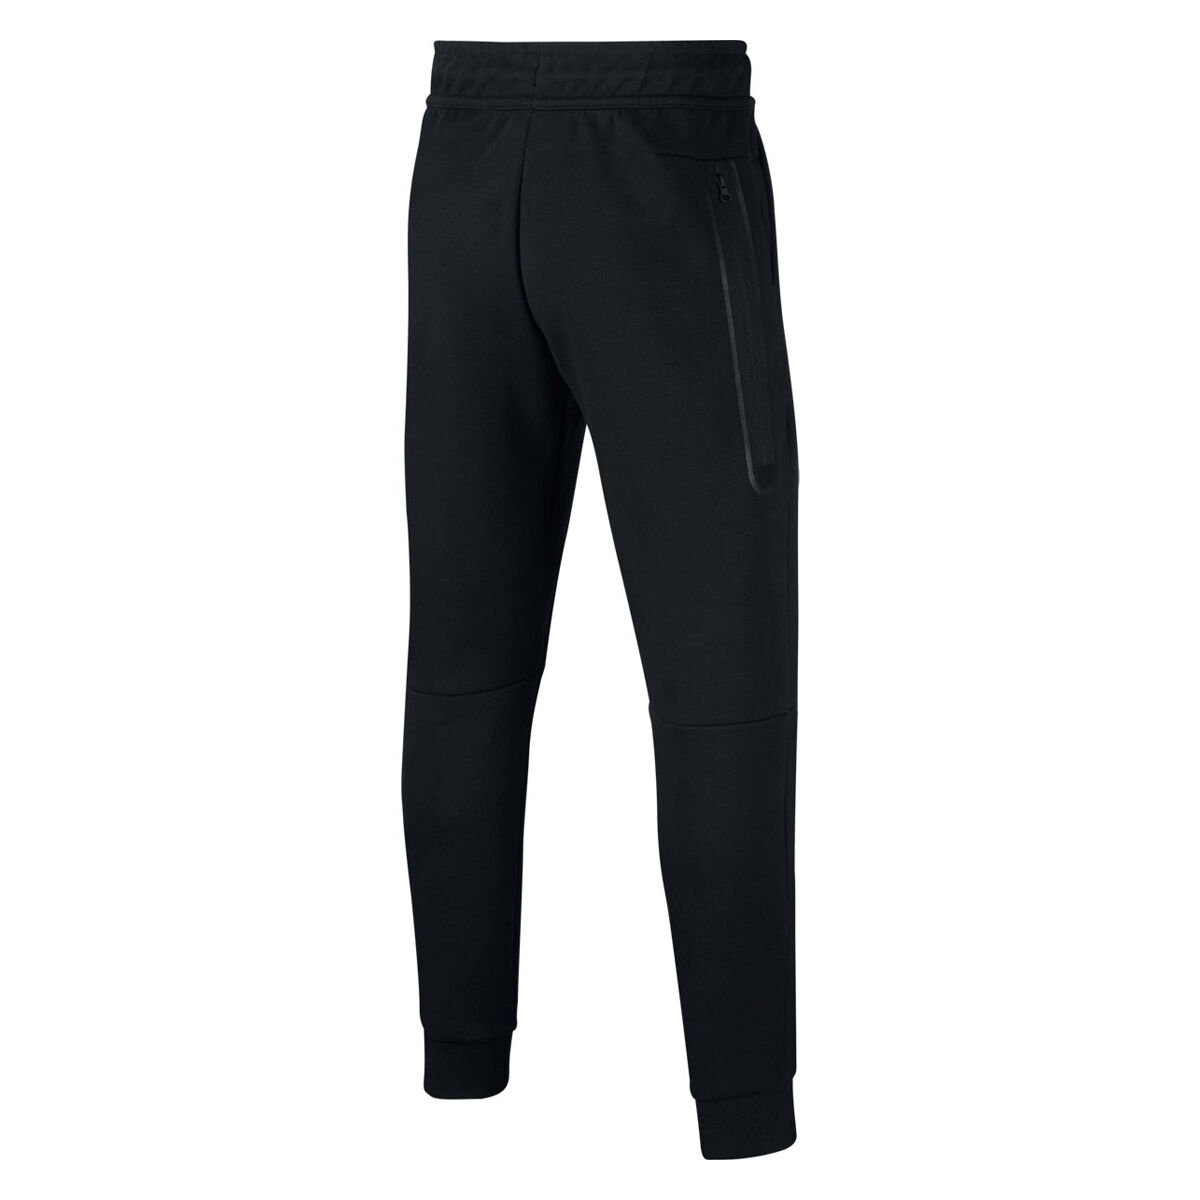 Nike Sportswear Men's Lightweight Tech Fleece Jogger Pants | Sportchek